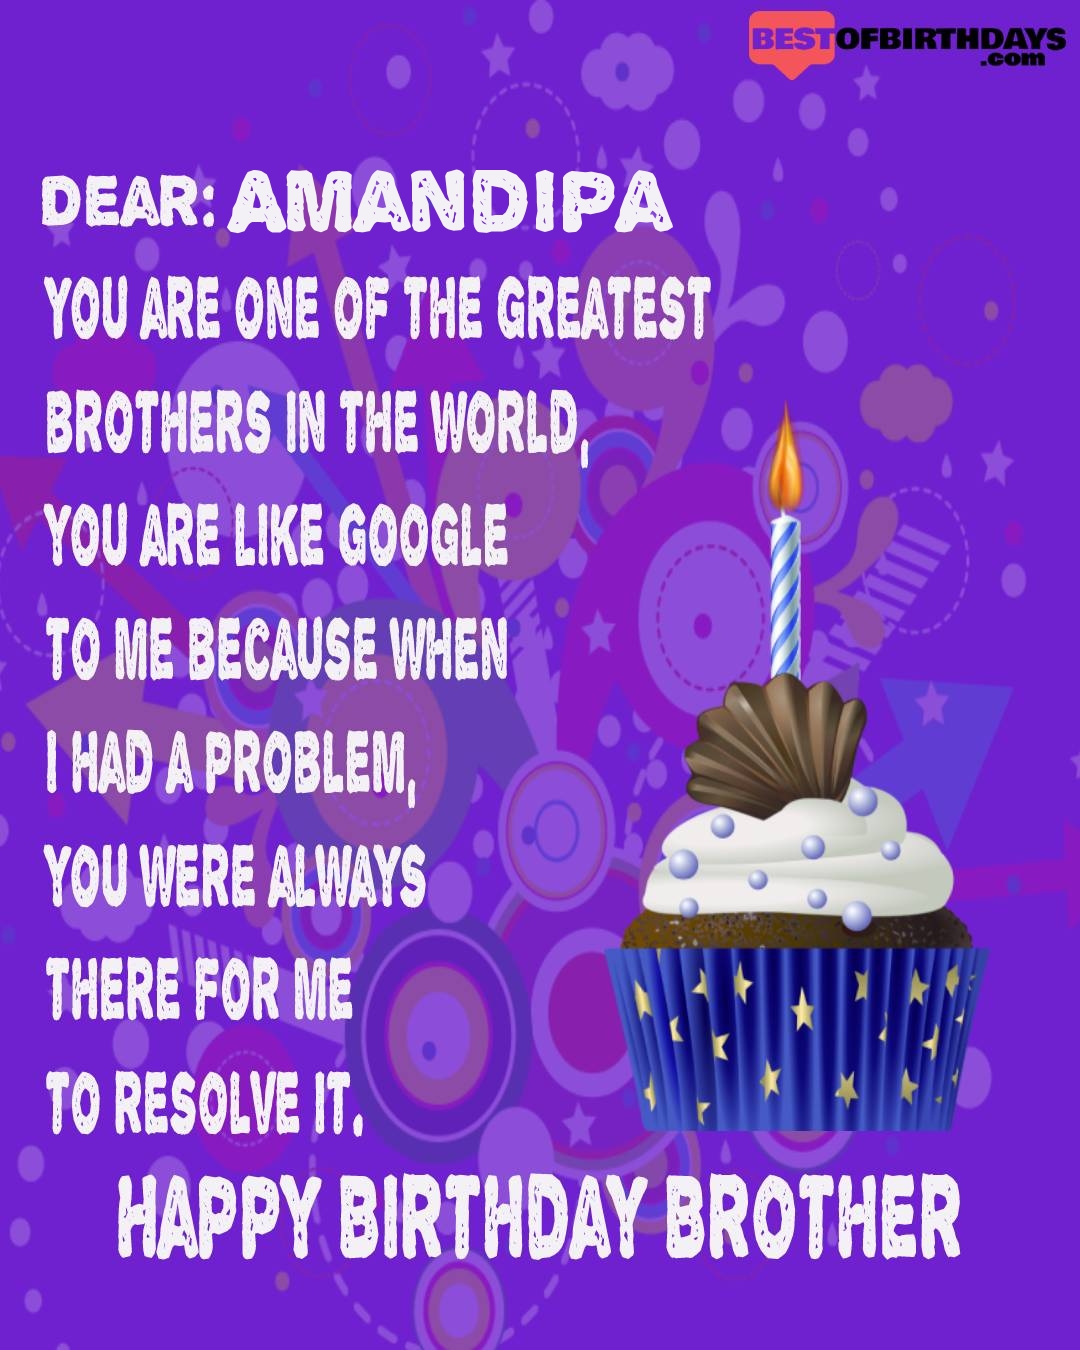 Happy birthday amandipa bhai brother bro